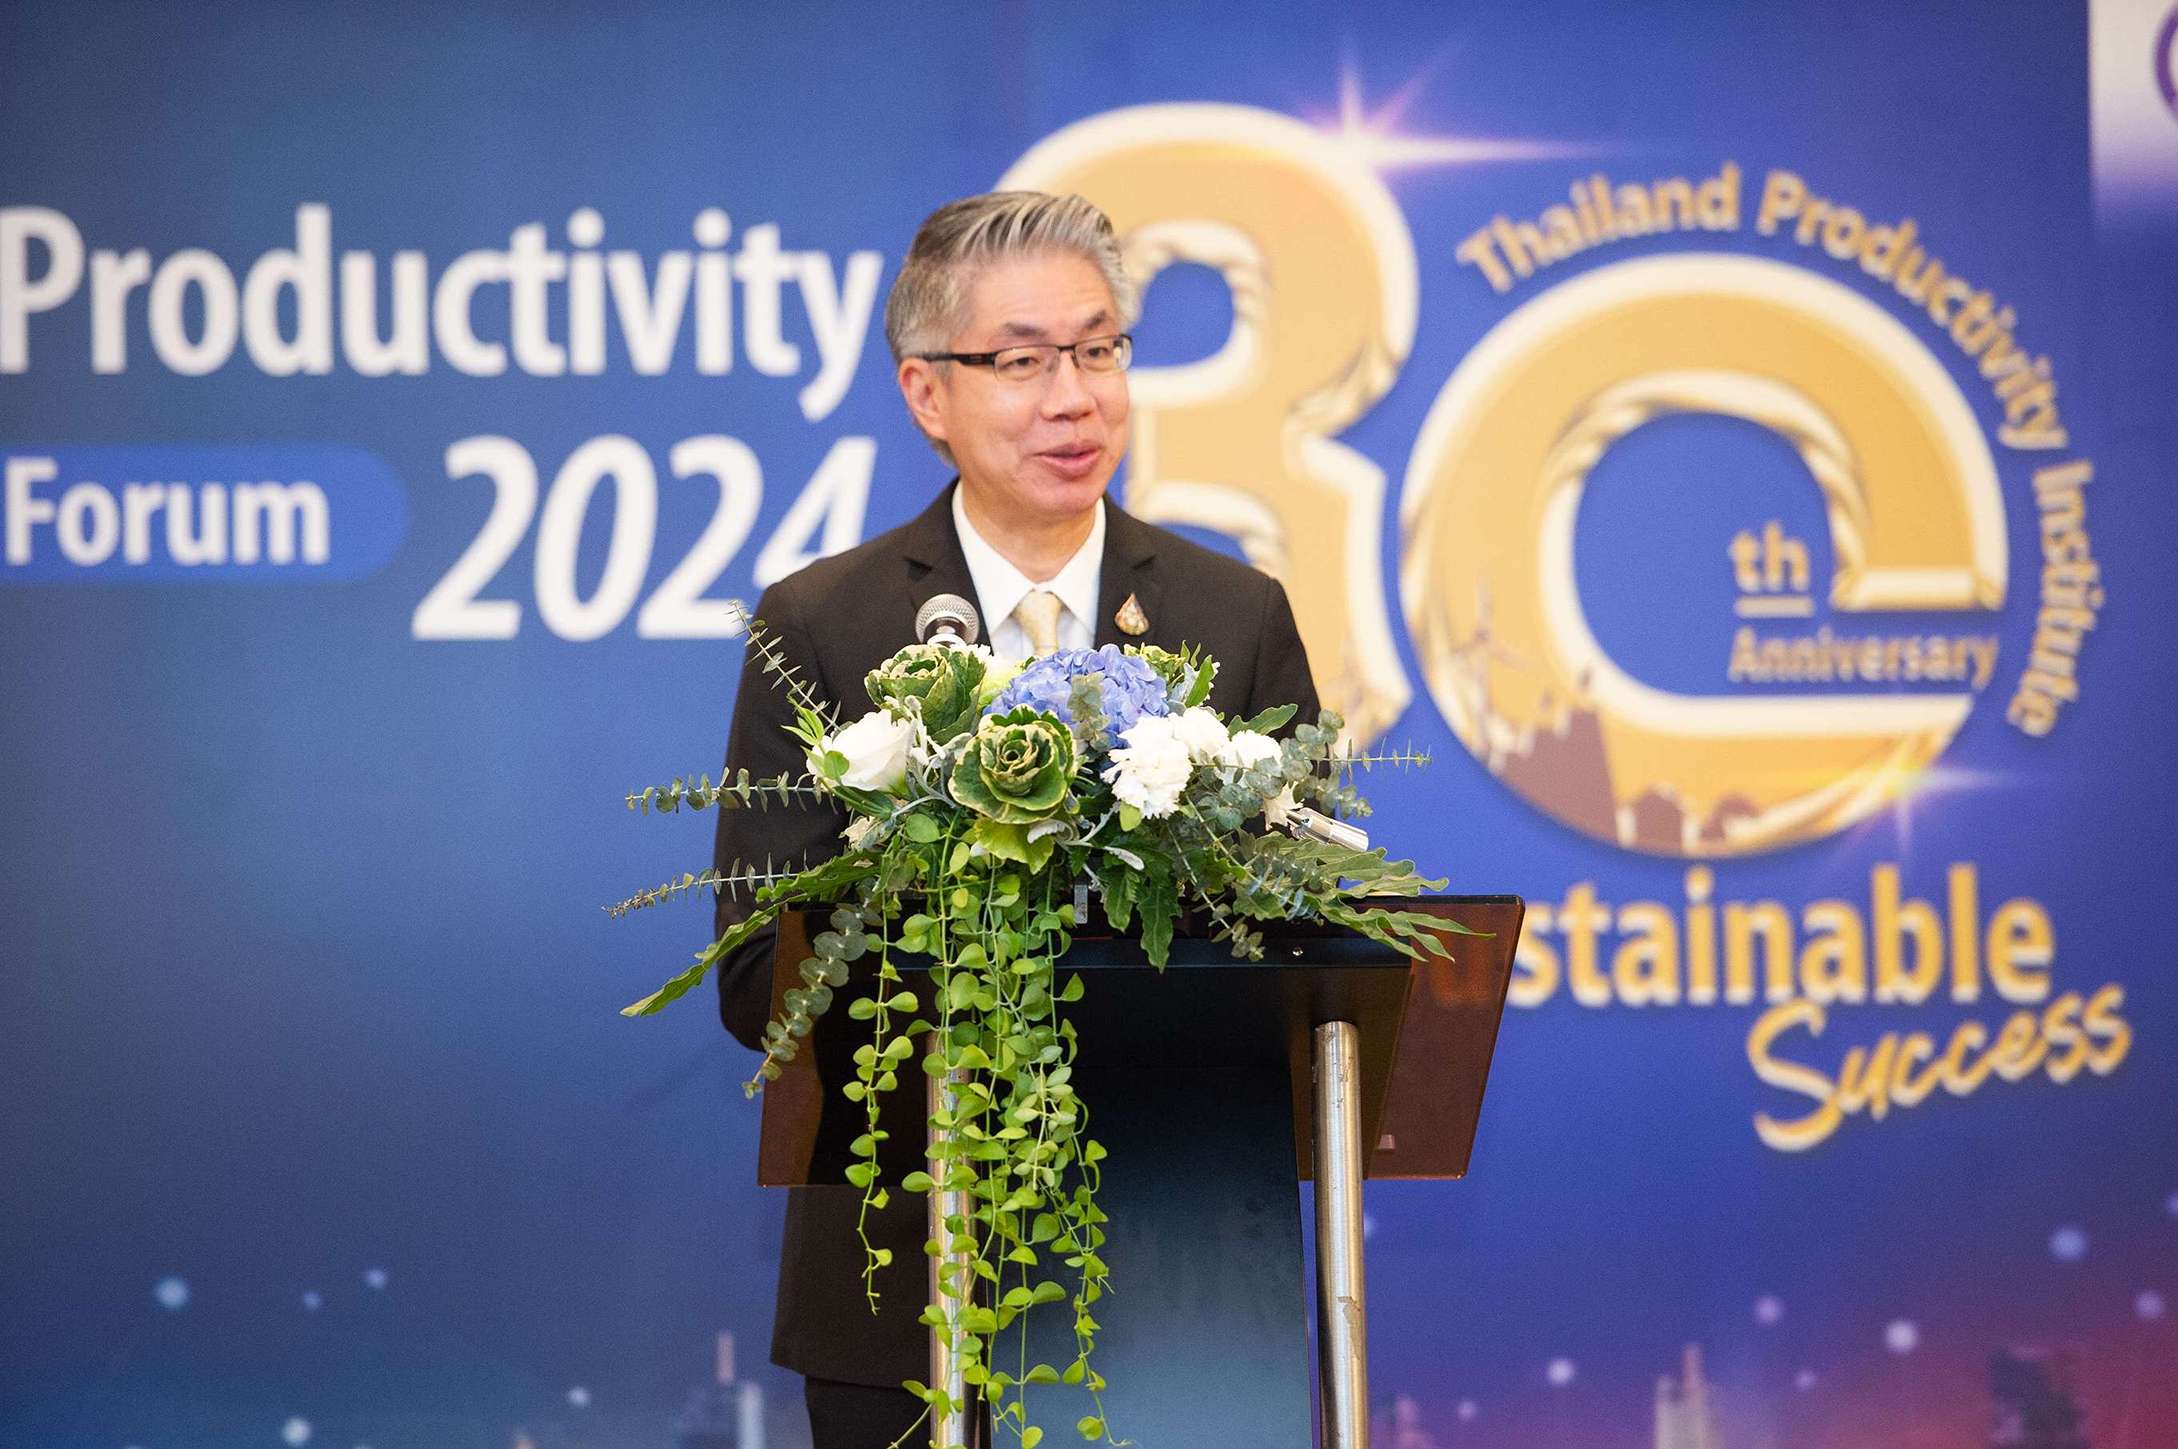 สถาบันเพิ่มผลผลิตแห่งชาติ, Productivity, Green Productivity, Thailand Productivity Forum 2024: The Path to Sustainable Success, Environment, สิ่งแวดล้อม